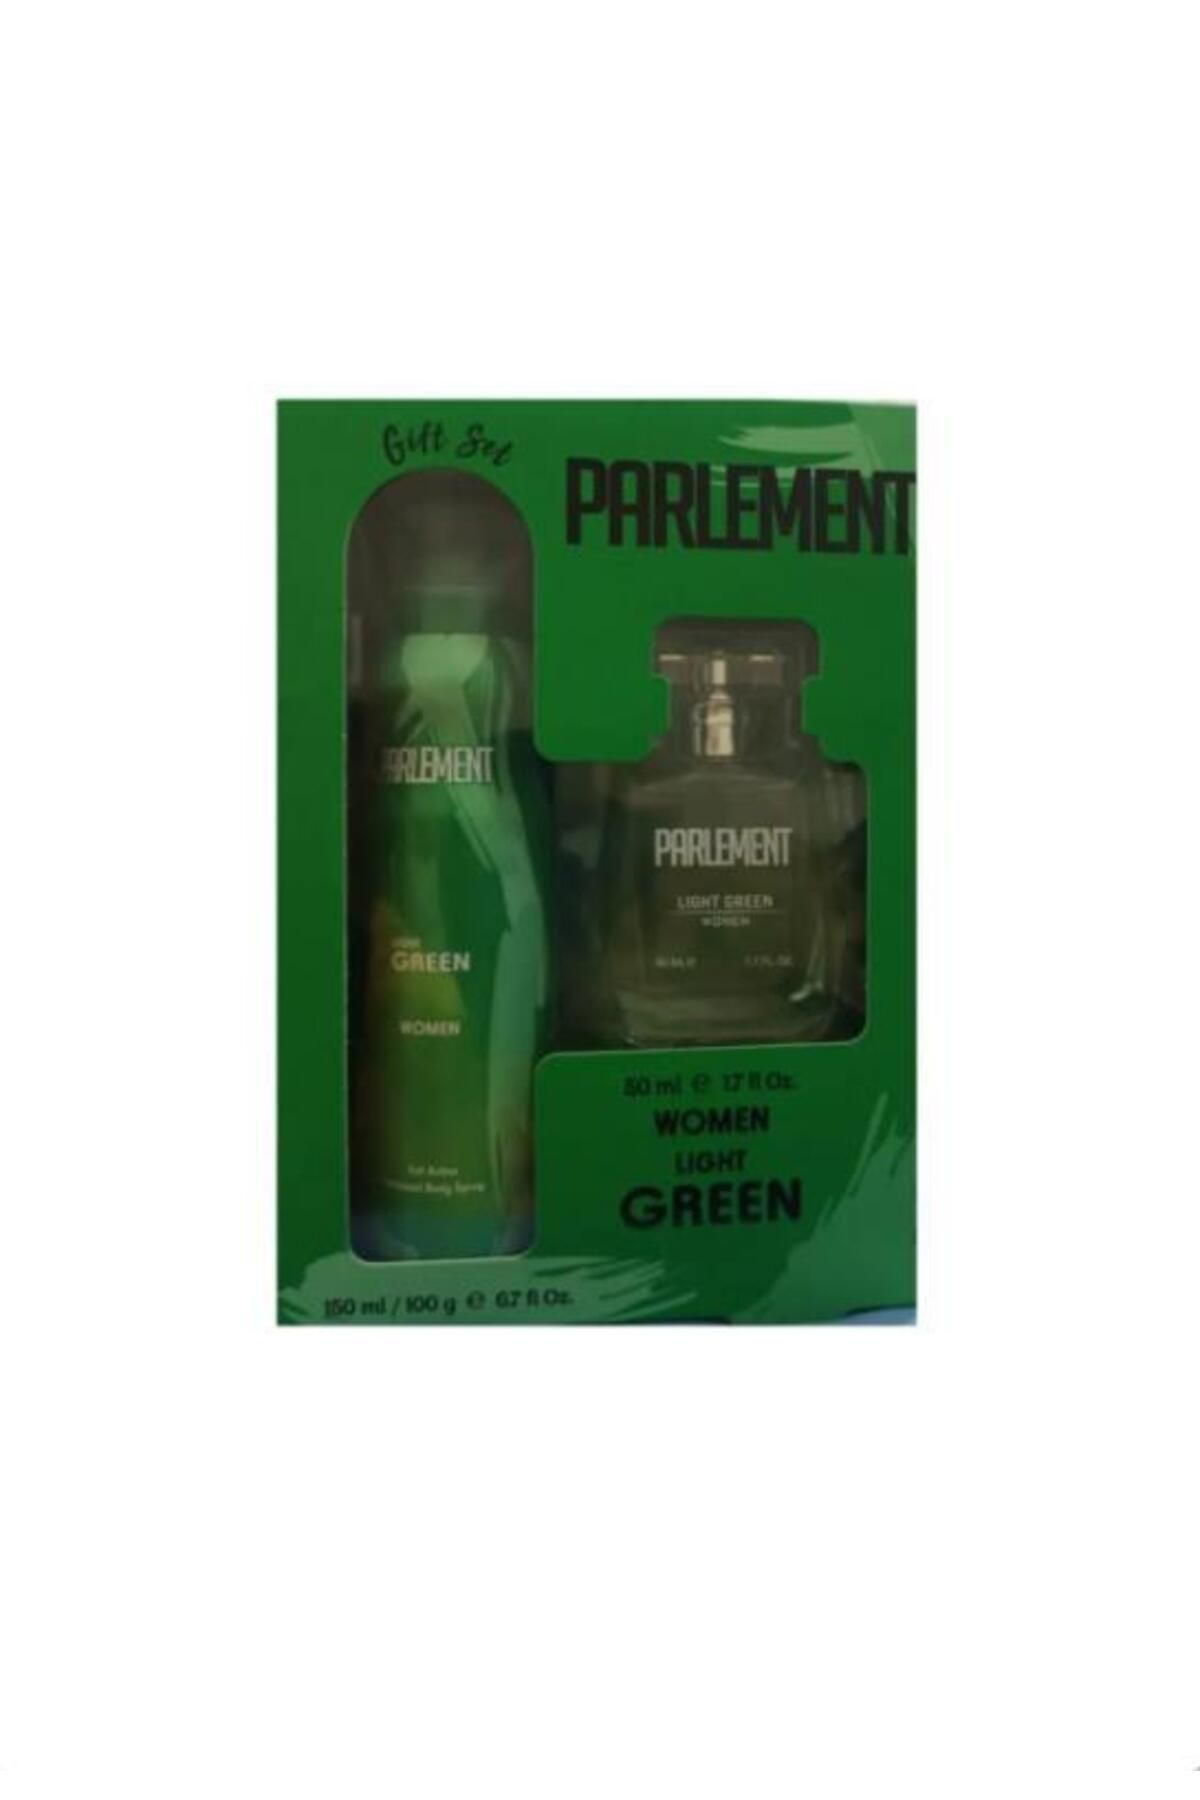 Parlement Light Green Women Set - Parfüm 50 ml Deodorant 150 ml